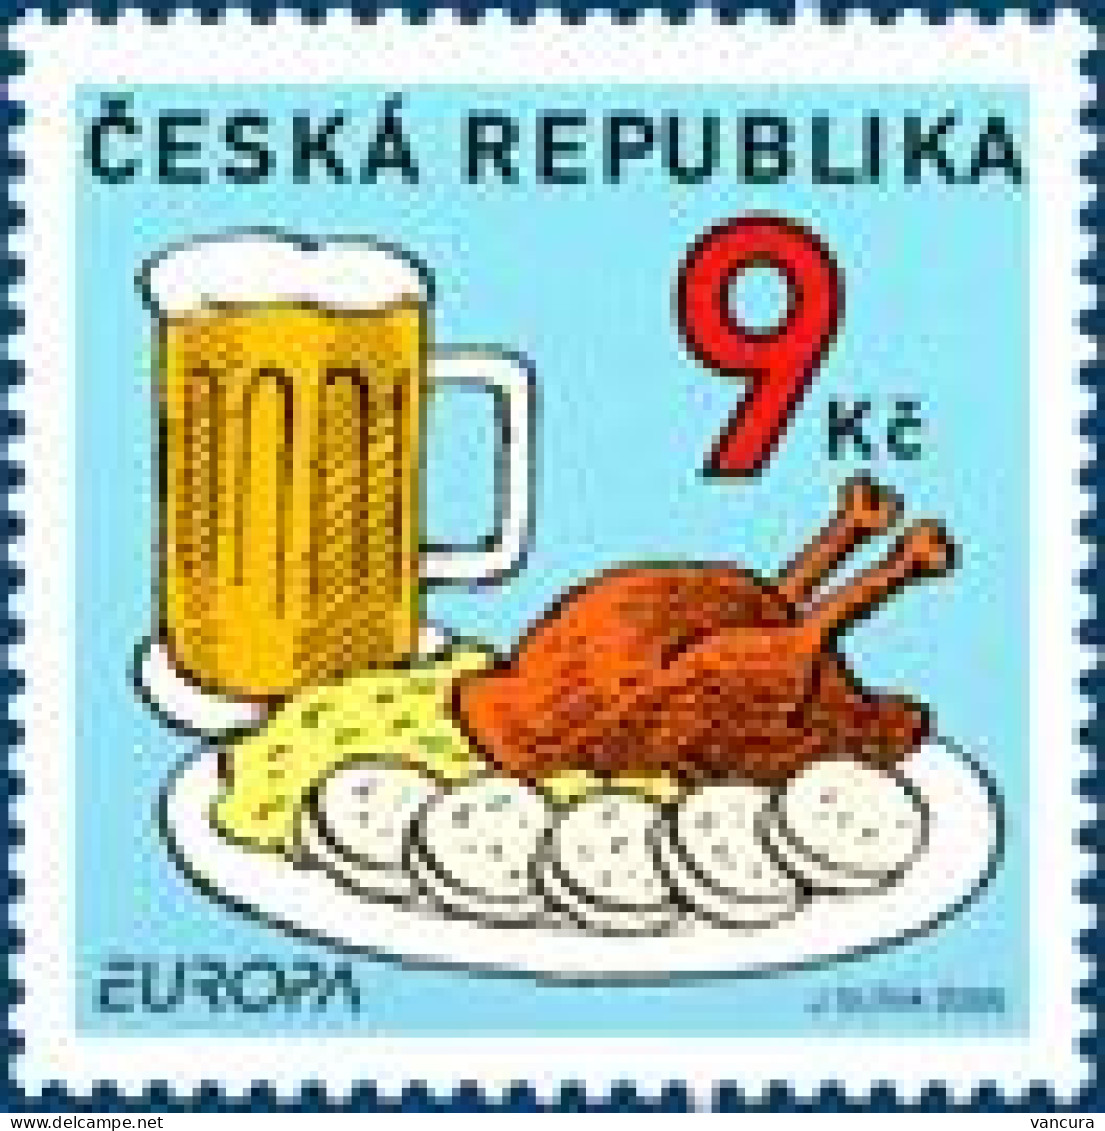 ** 436 Czech Republic EUROPA 2005 Beer Sauerkraut Dumpling Goose - Beers